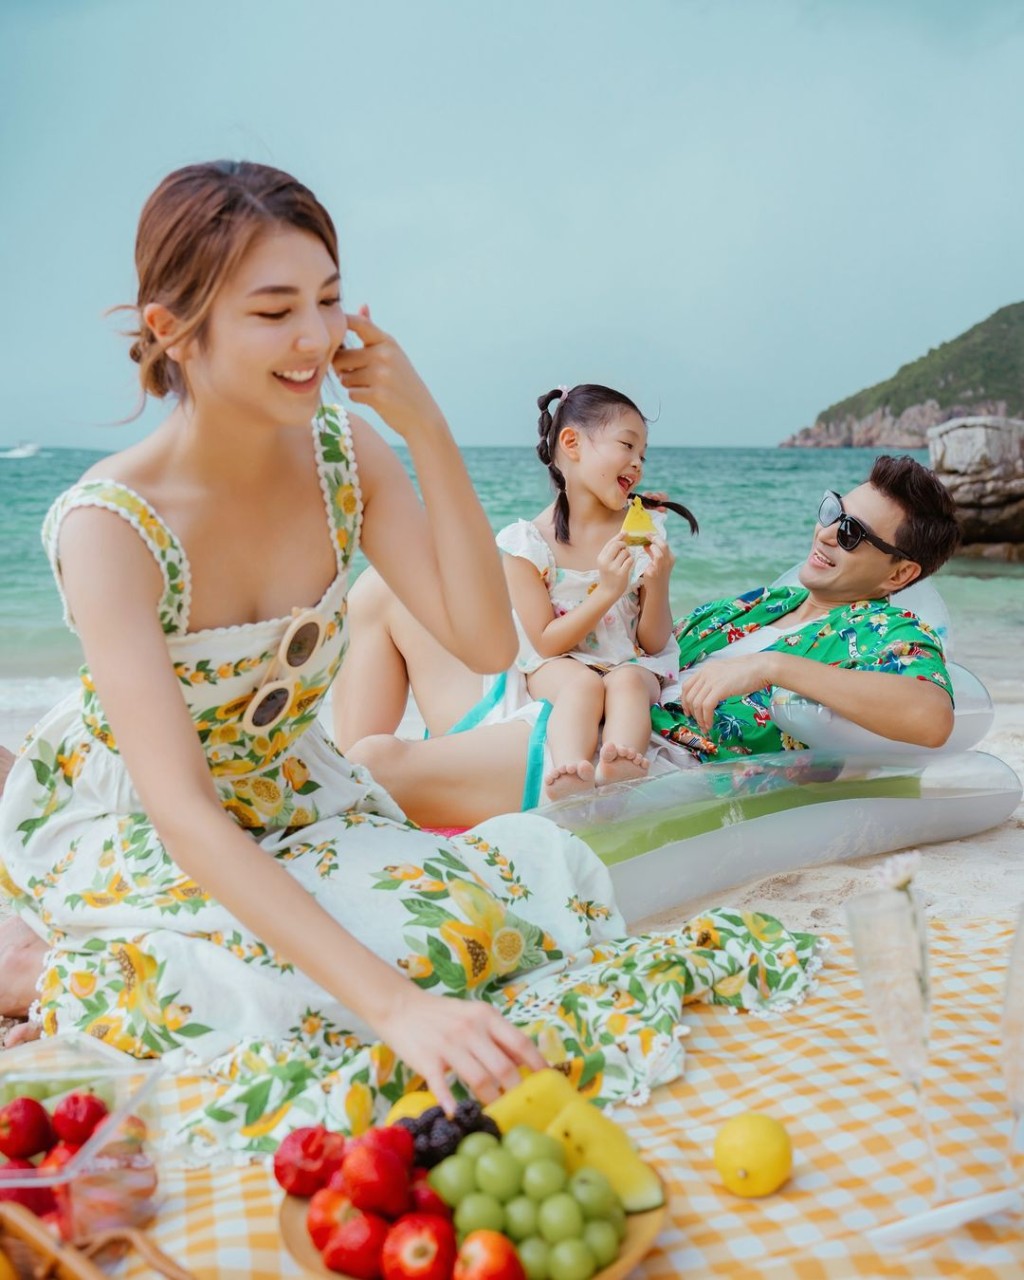 單文柔亦有在IG貼出經過P圖的沙灘家庭照。